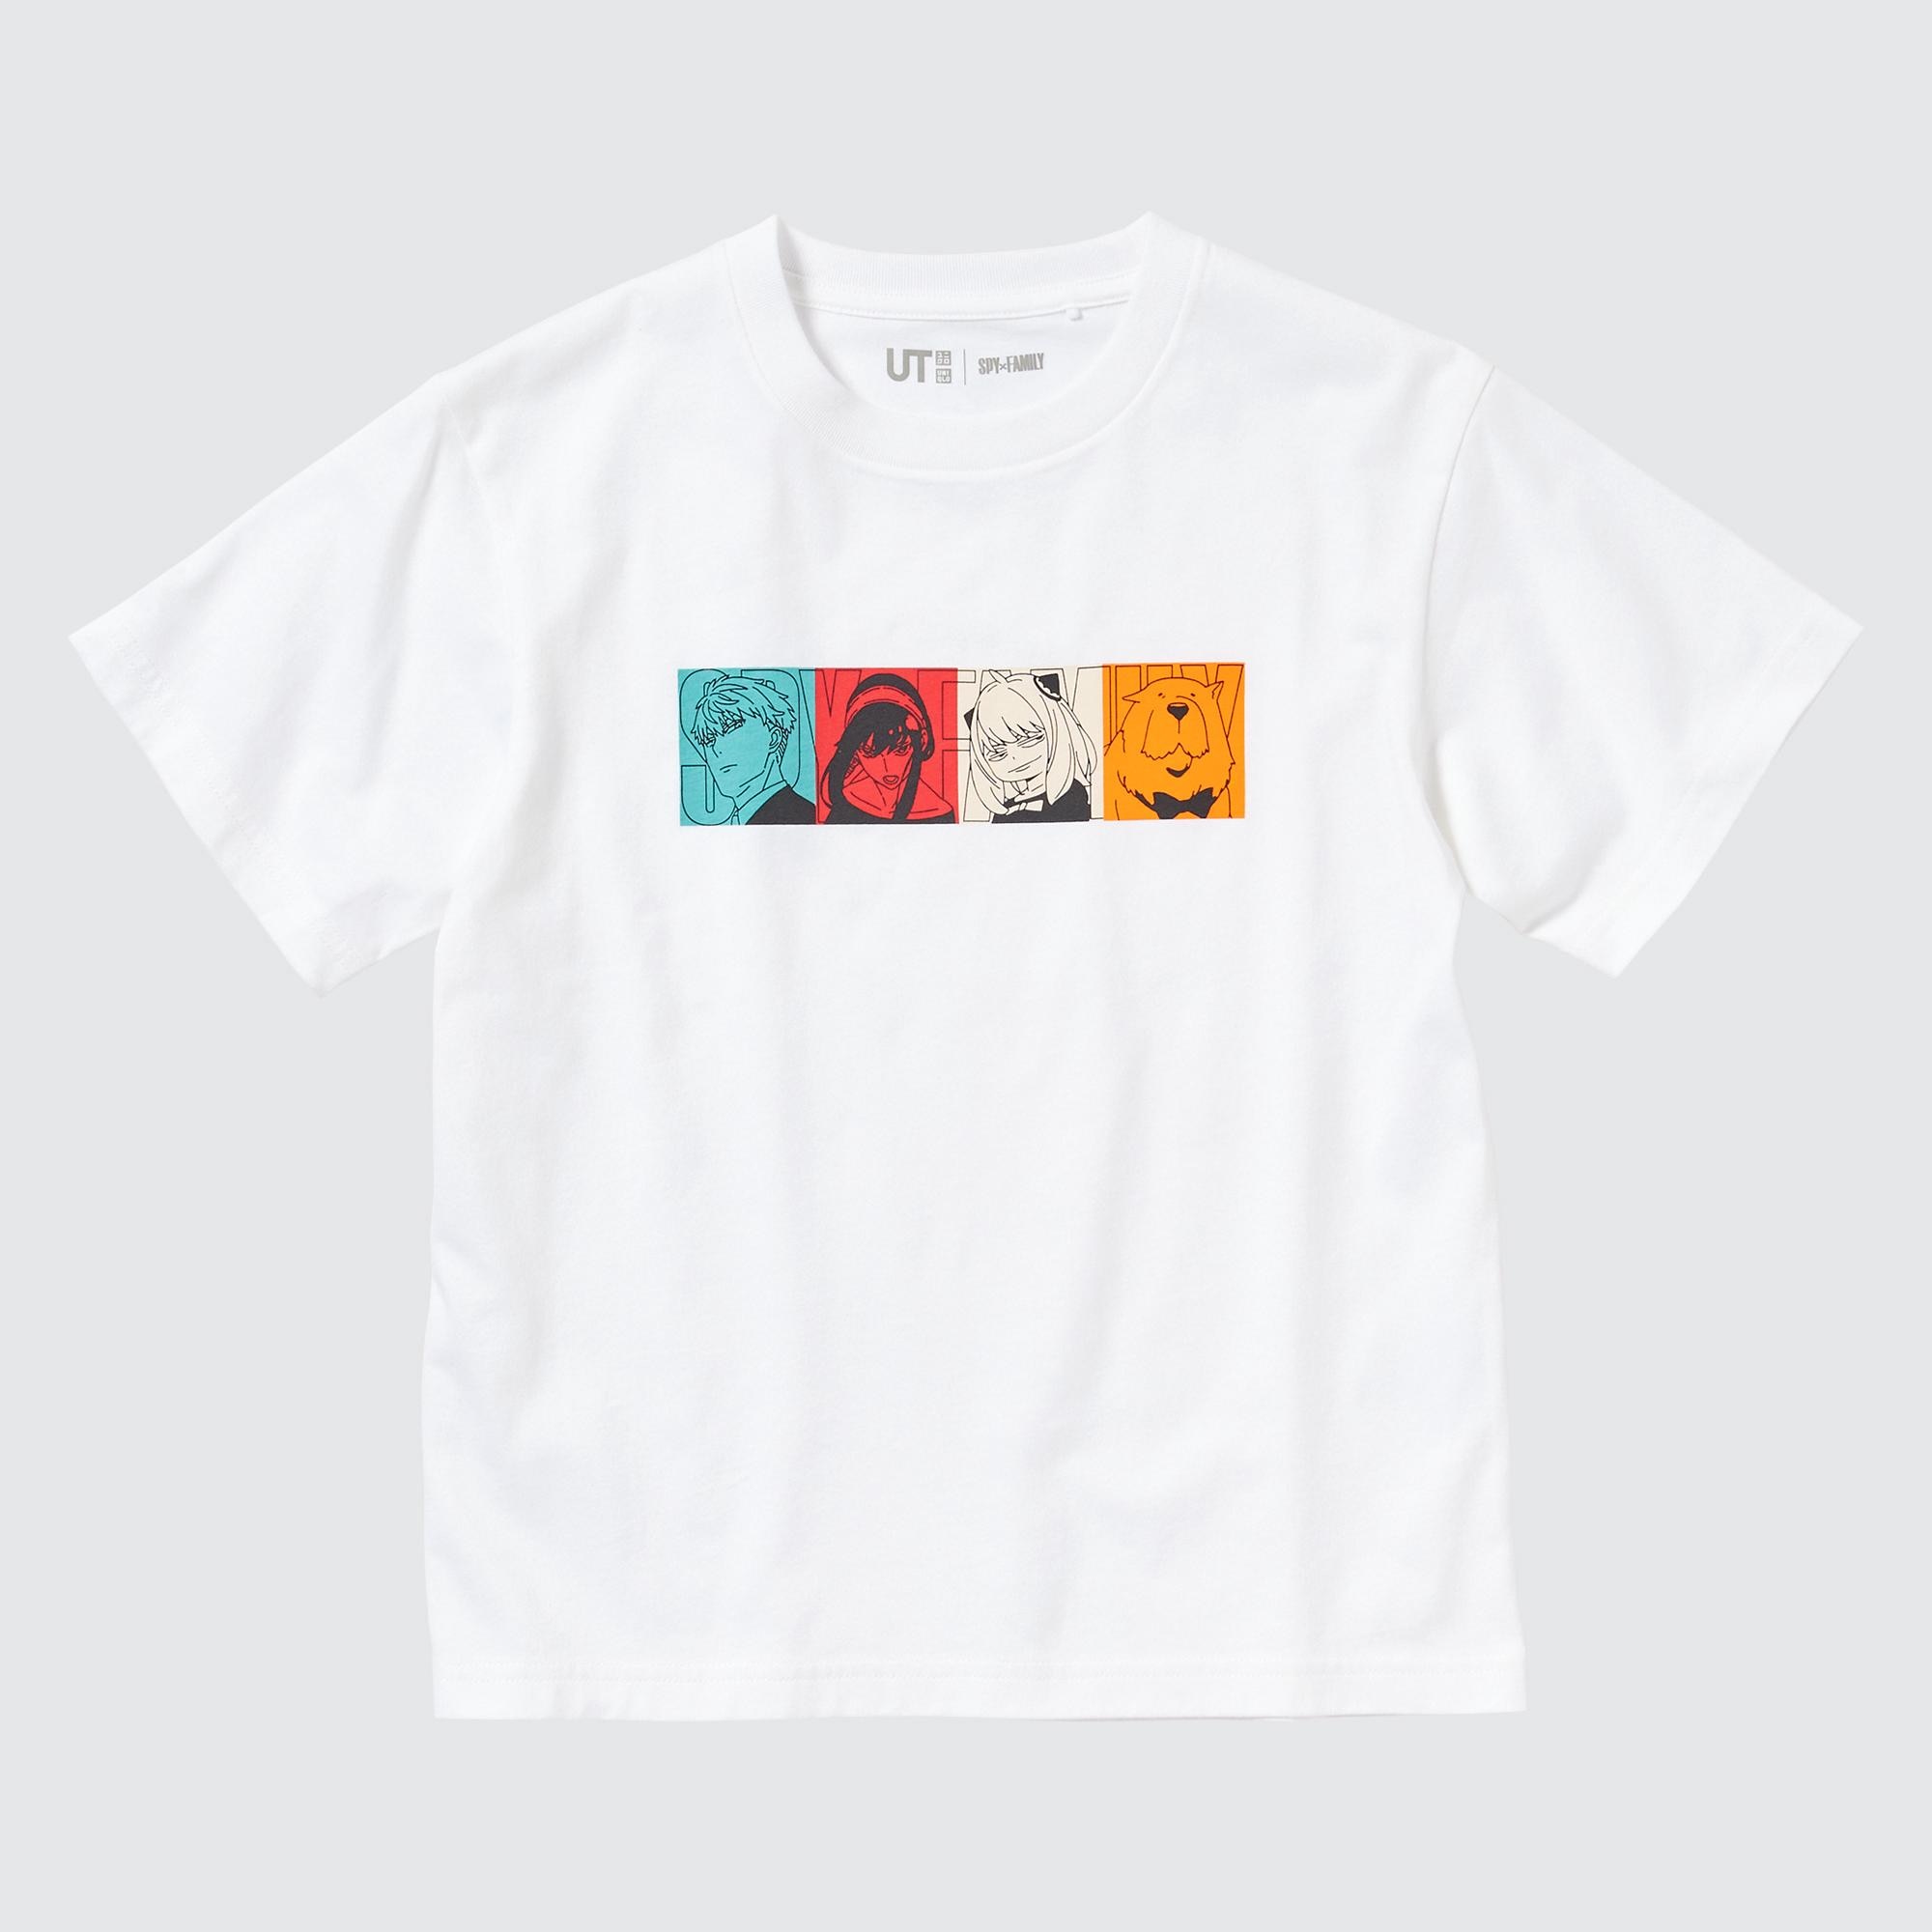 ユニクロ公式 | Tシャツ・カットソー(キッズ)